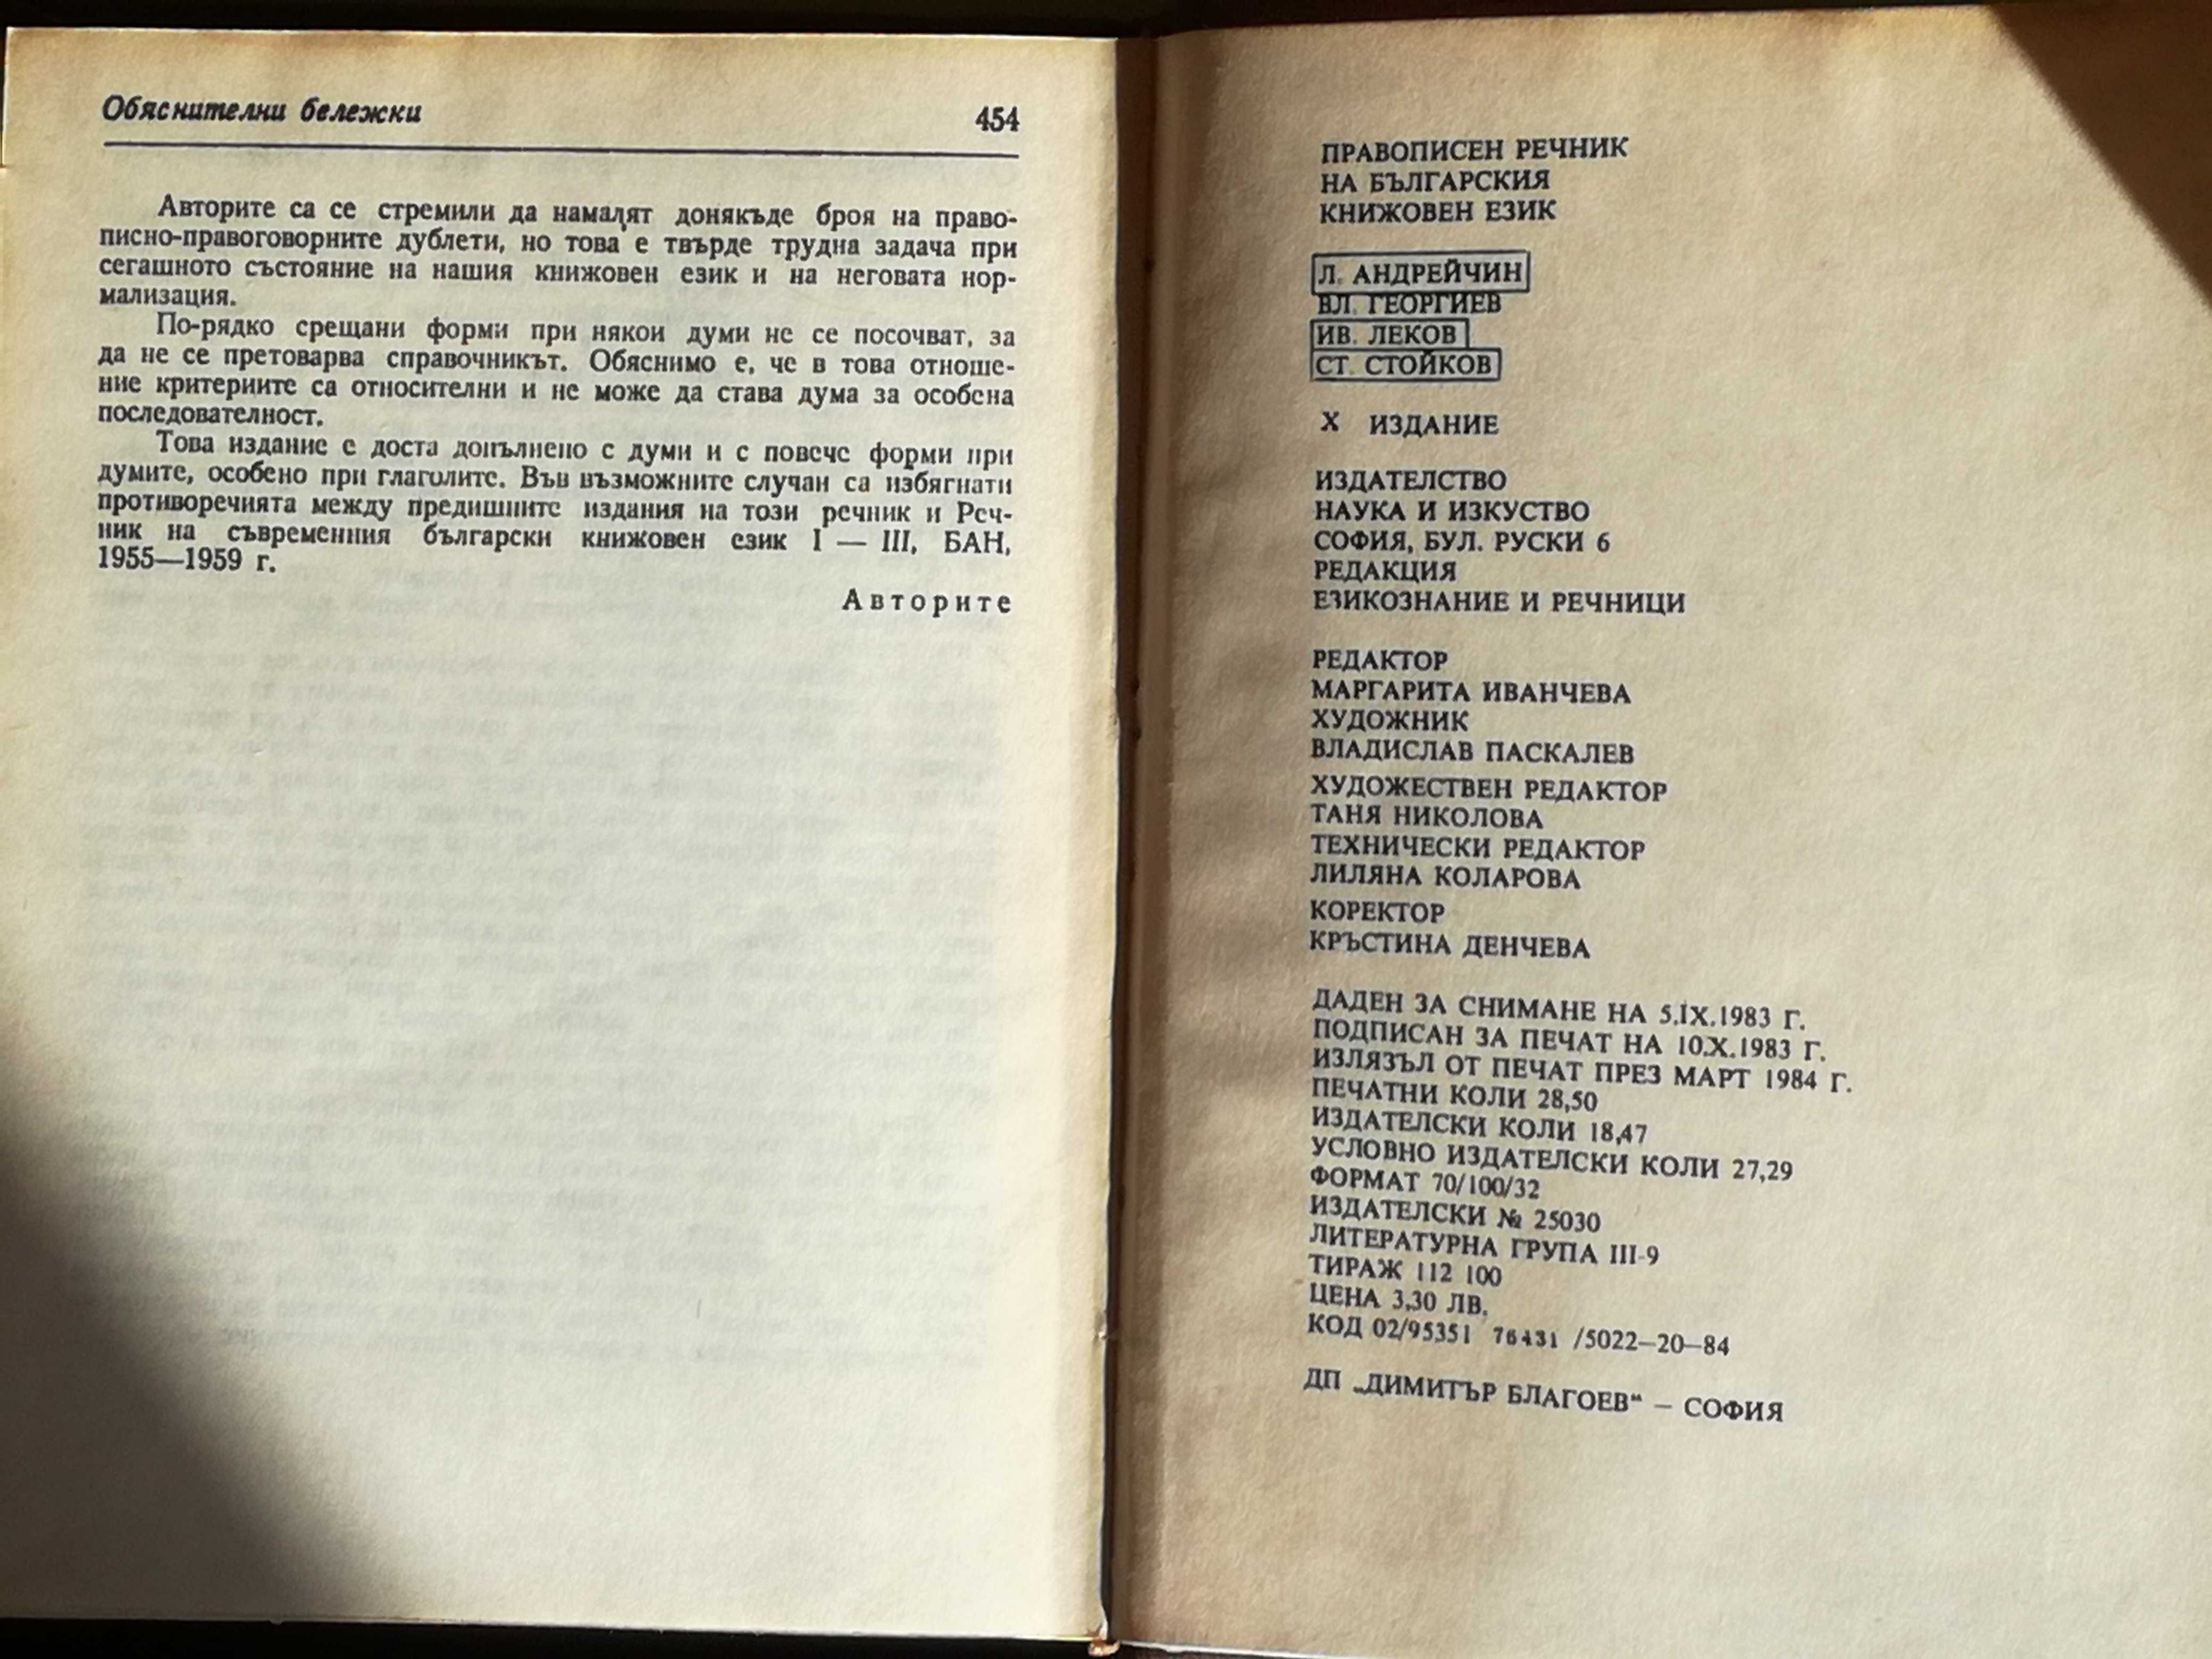 Правописен речник на Българския книжовен език